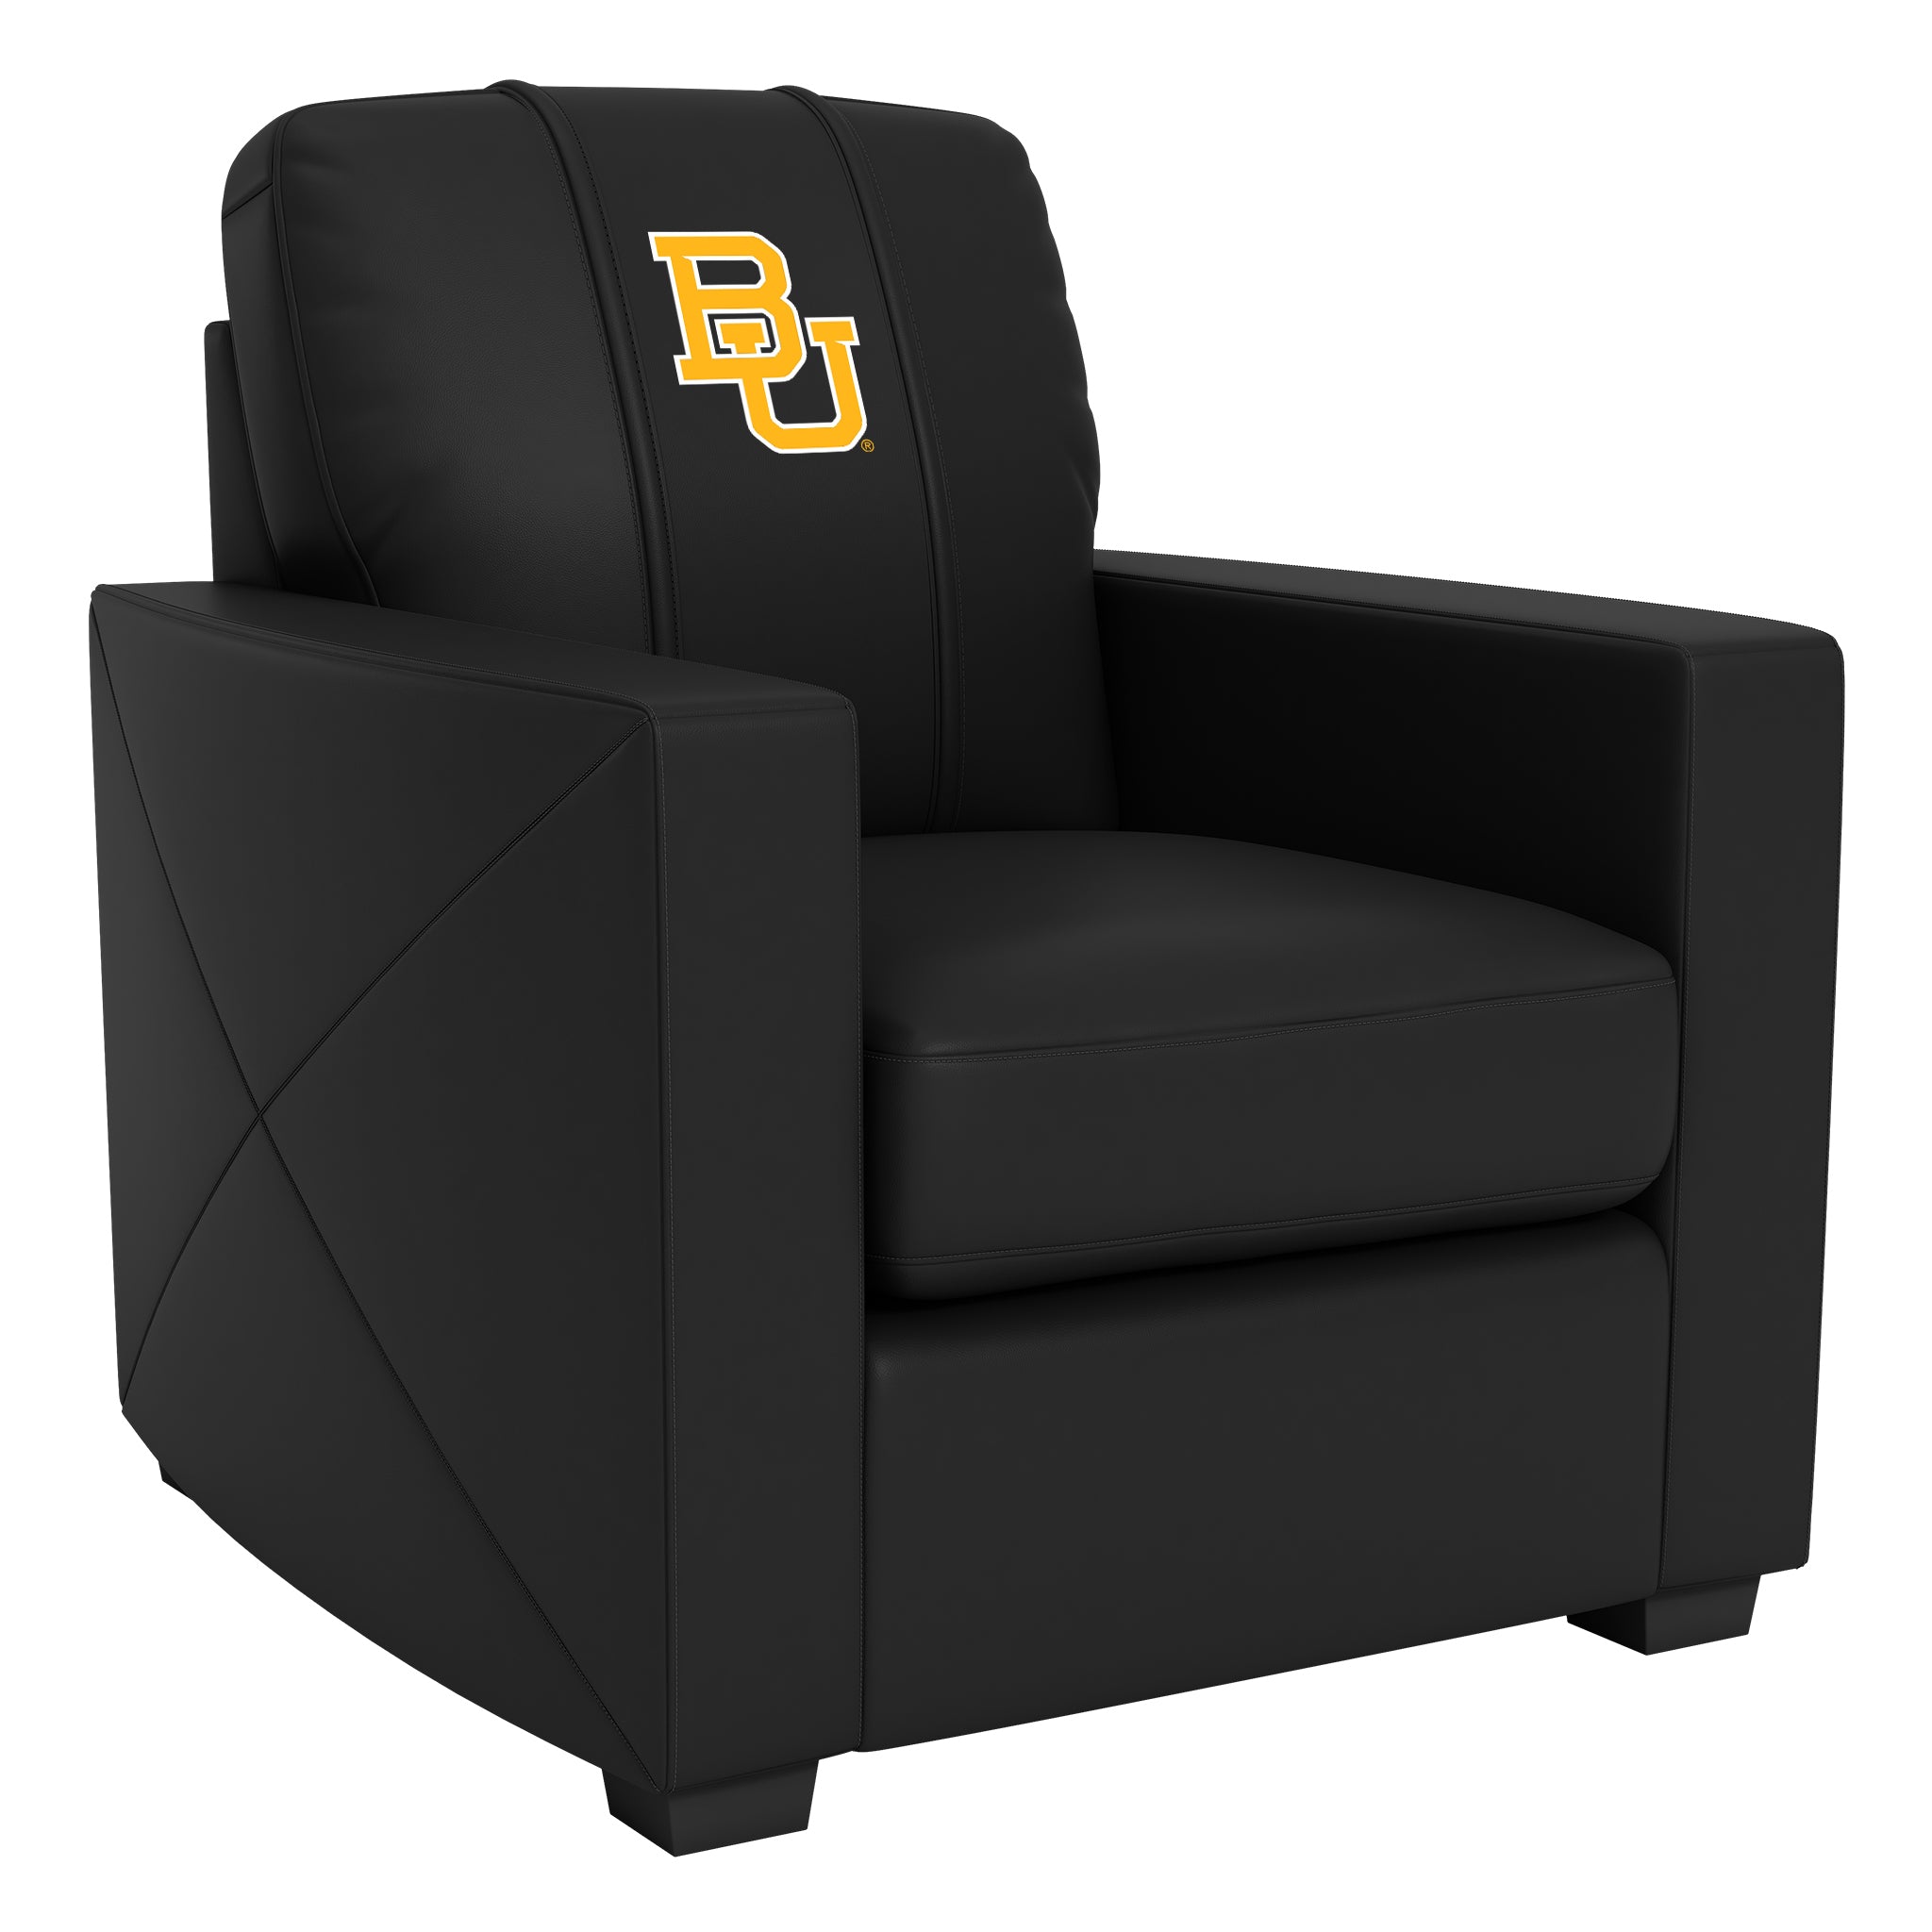 Baylor Bears Silver Club Chair with Baylor Bears Logo